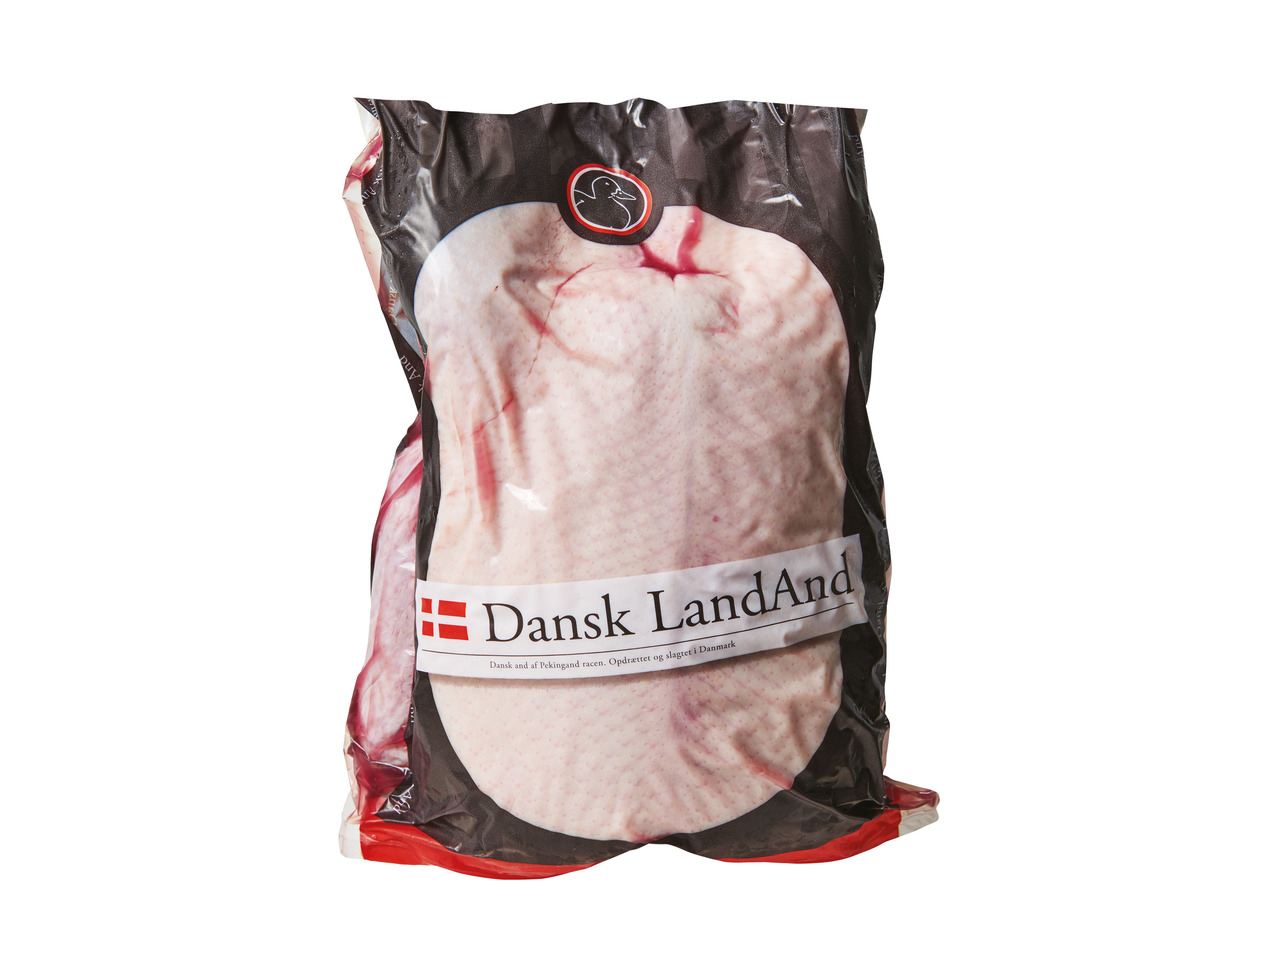 DANSK AND Hel dansk landand